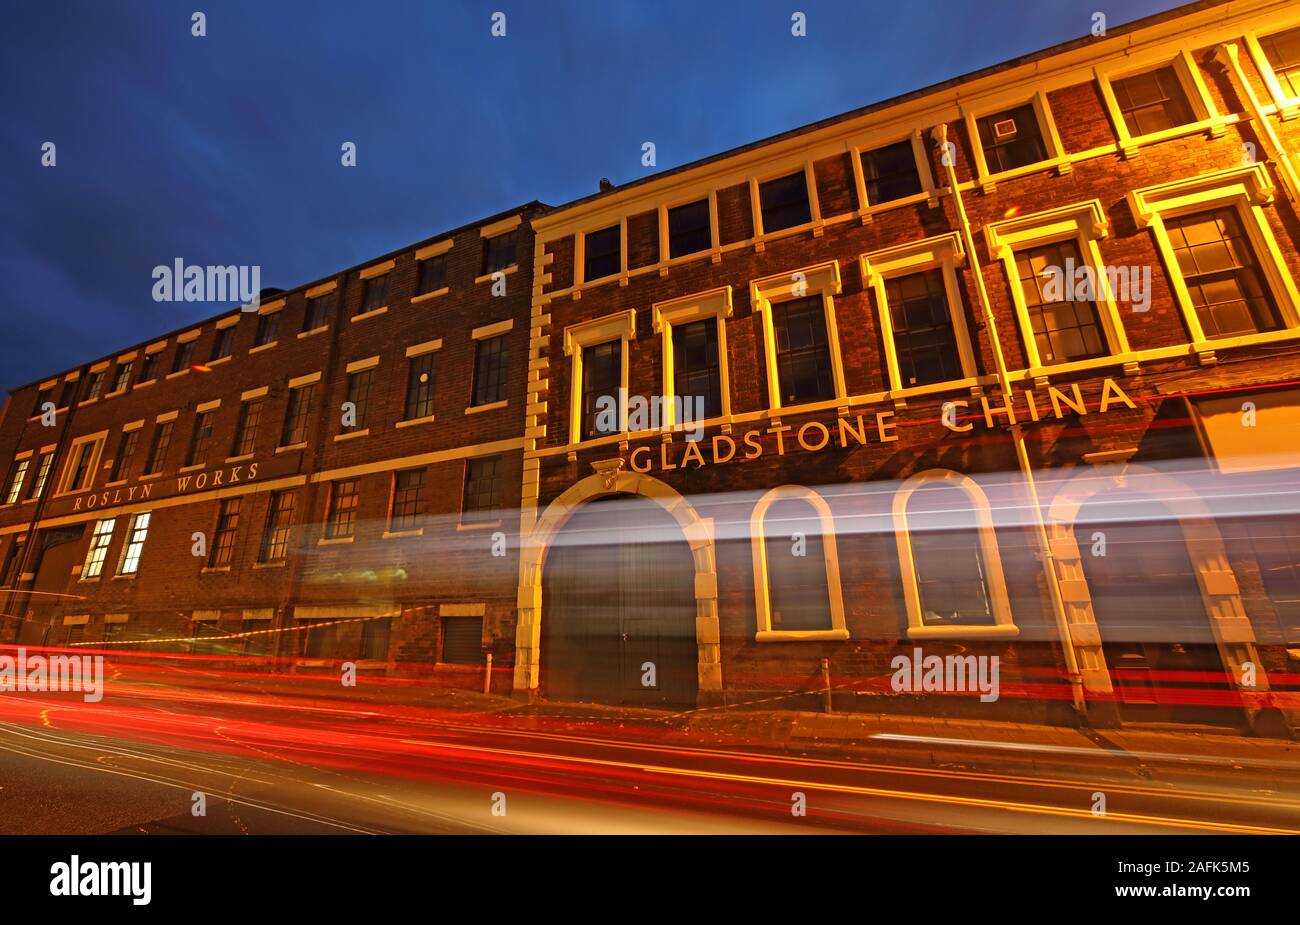 Gladstone China Factory, Longton, Stoke-On-Trent, Staffordshire, West Midlands, England, Großbritannien - Uttoxeter Rd, Longton, Stoke-on-Trent ST3 1PQ Stockfoto